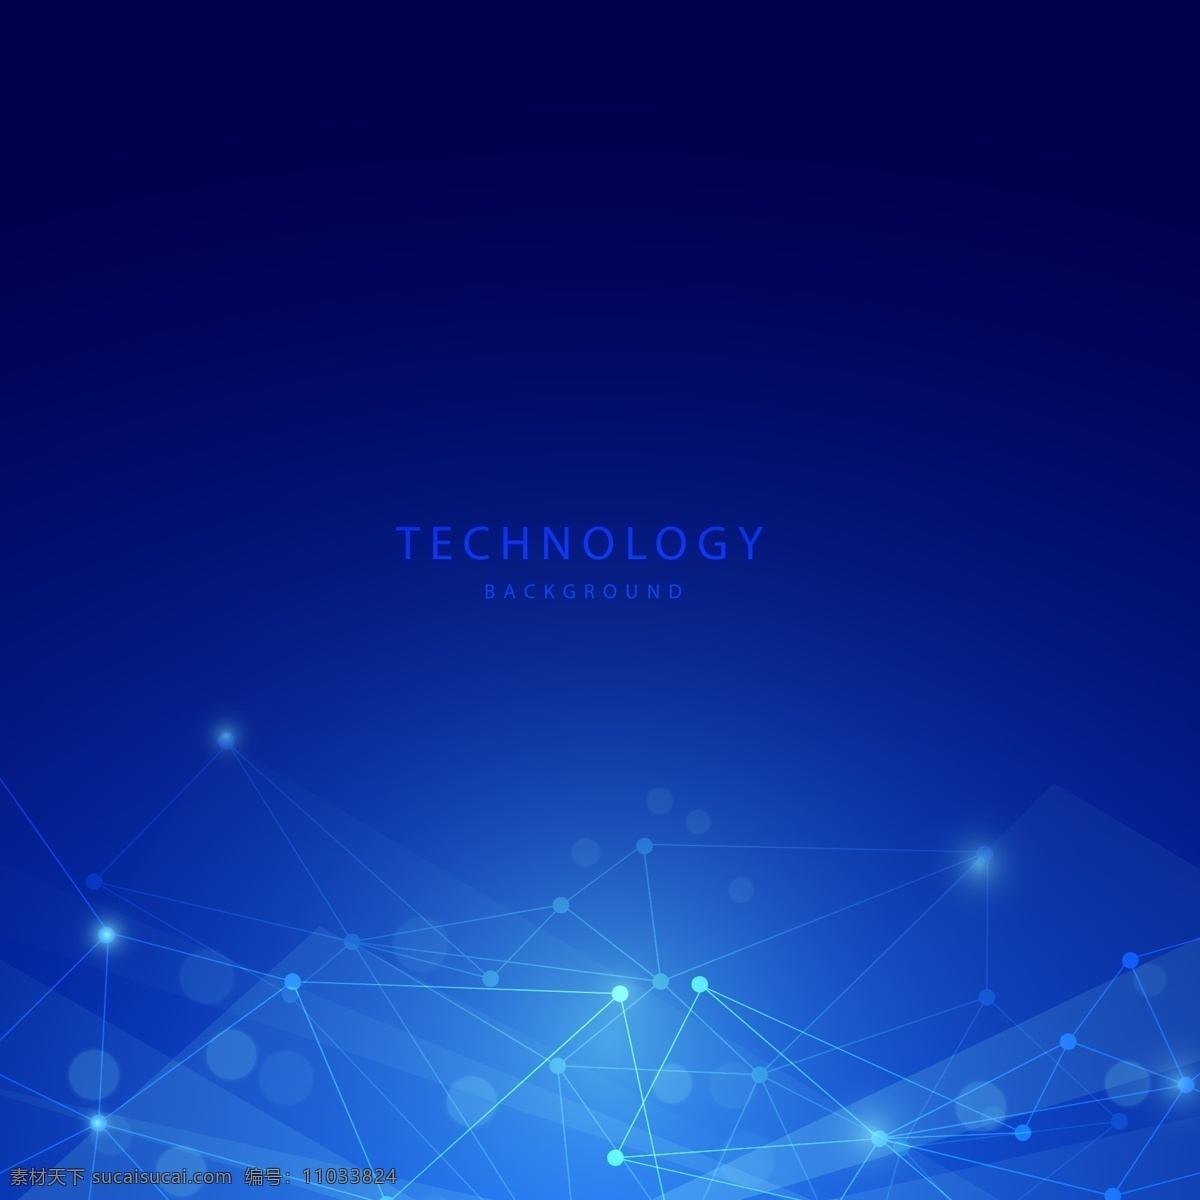 蓝色背景 电路 电子 科技素材 电子科技 信息传输 金融 几何 背景 背景图片 设计素材 抽象 技术 网络 互联网 等距图 未来 网格 结构体 货币 矩阵 大数据 未来技科 底纹边框 背景底纹